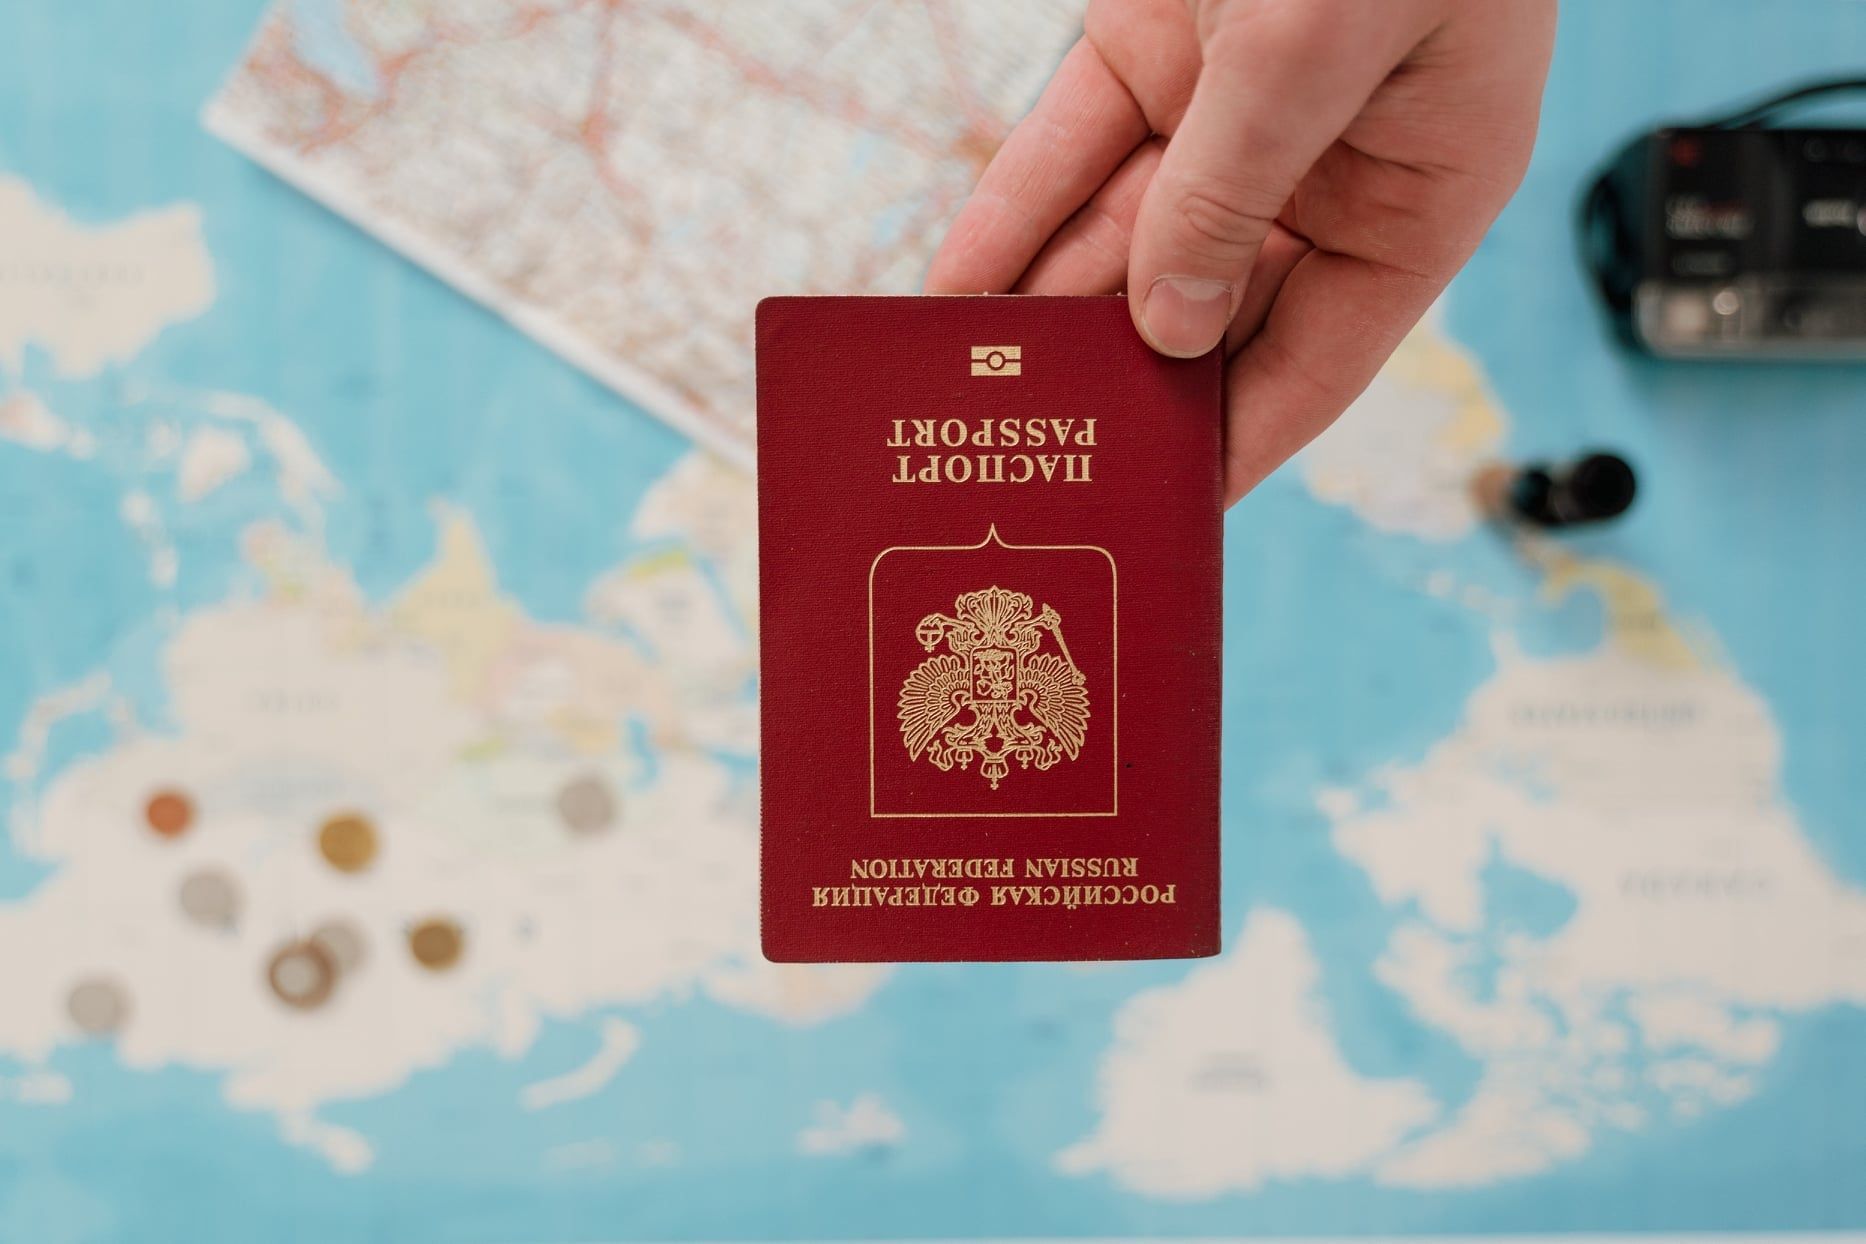 Un cliente que muestra su pasaporte como parte del proceso de la residencia para extranjeros. Foto tomada en Santa Cruz de Tenerife.